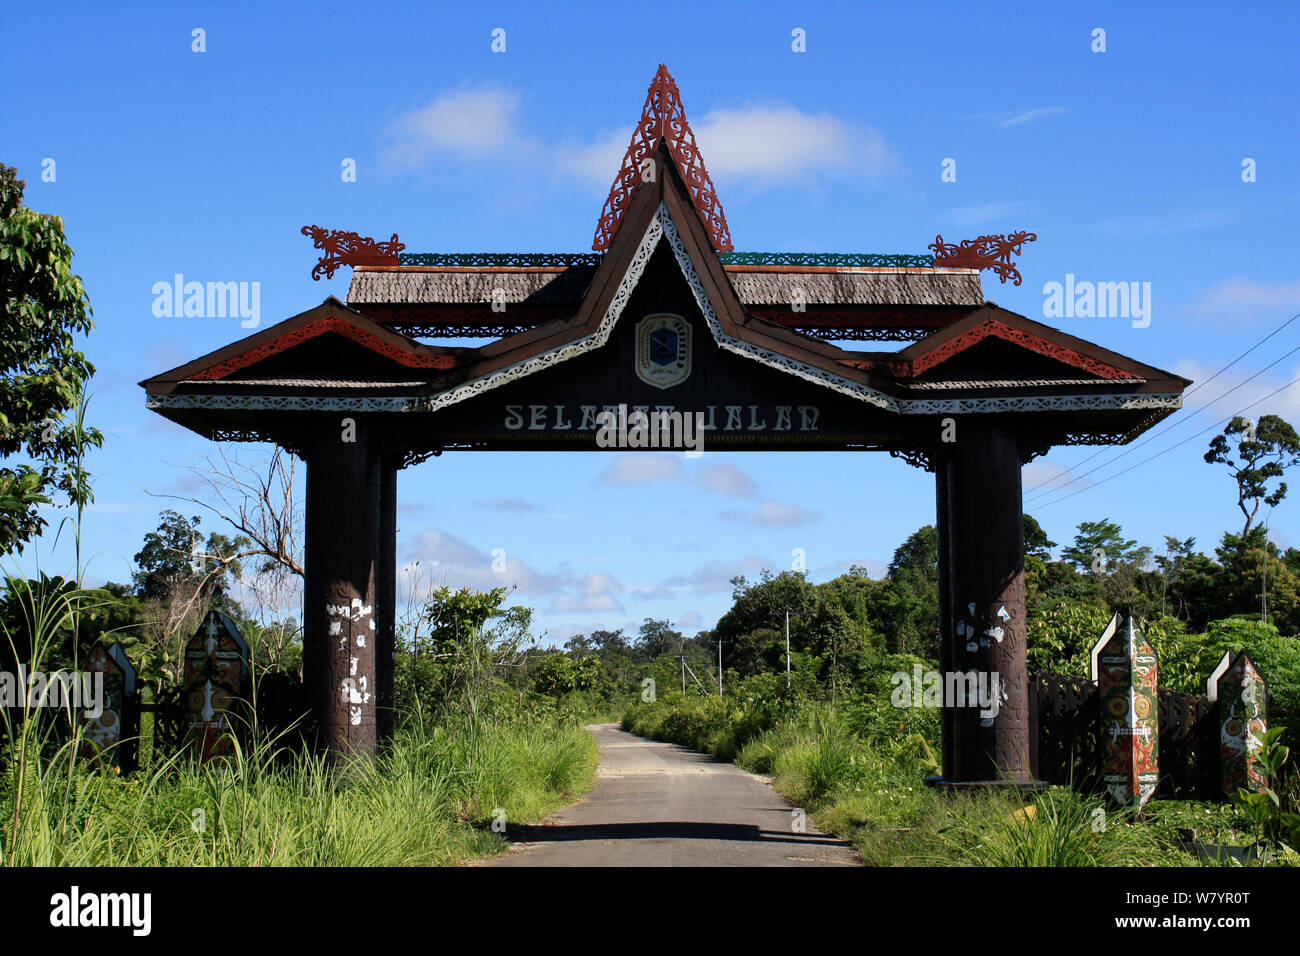 Traditionelle Architektur, Central Kalimantan. Indonesische Borneo. Juni 2010. Stockfoto